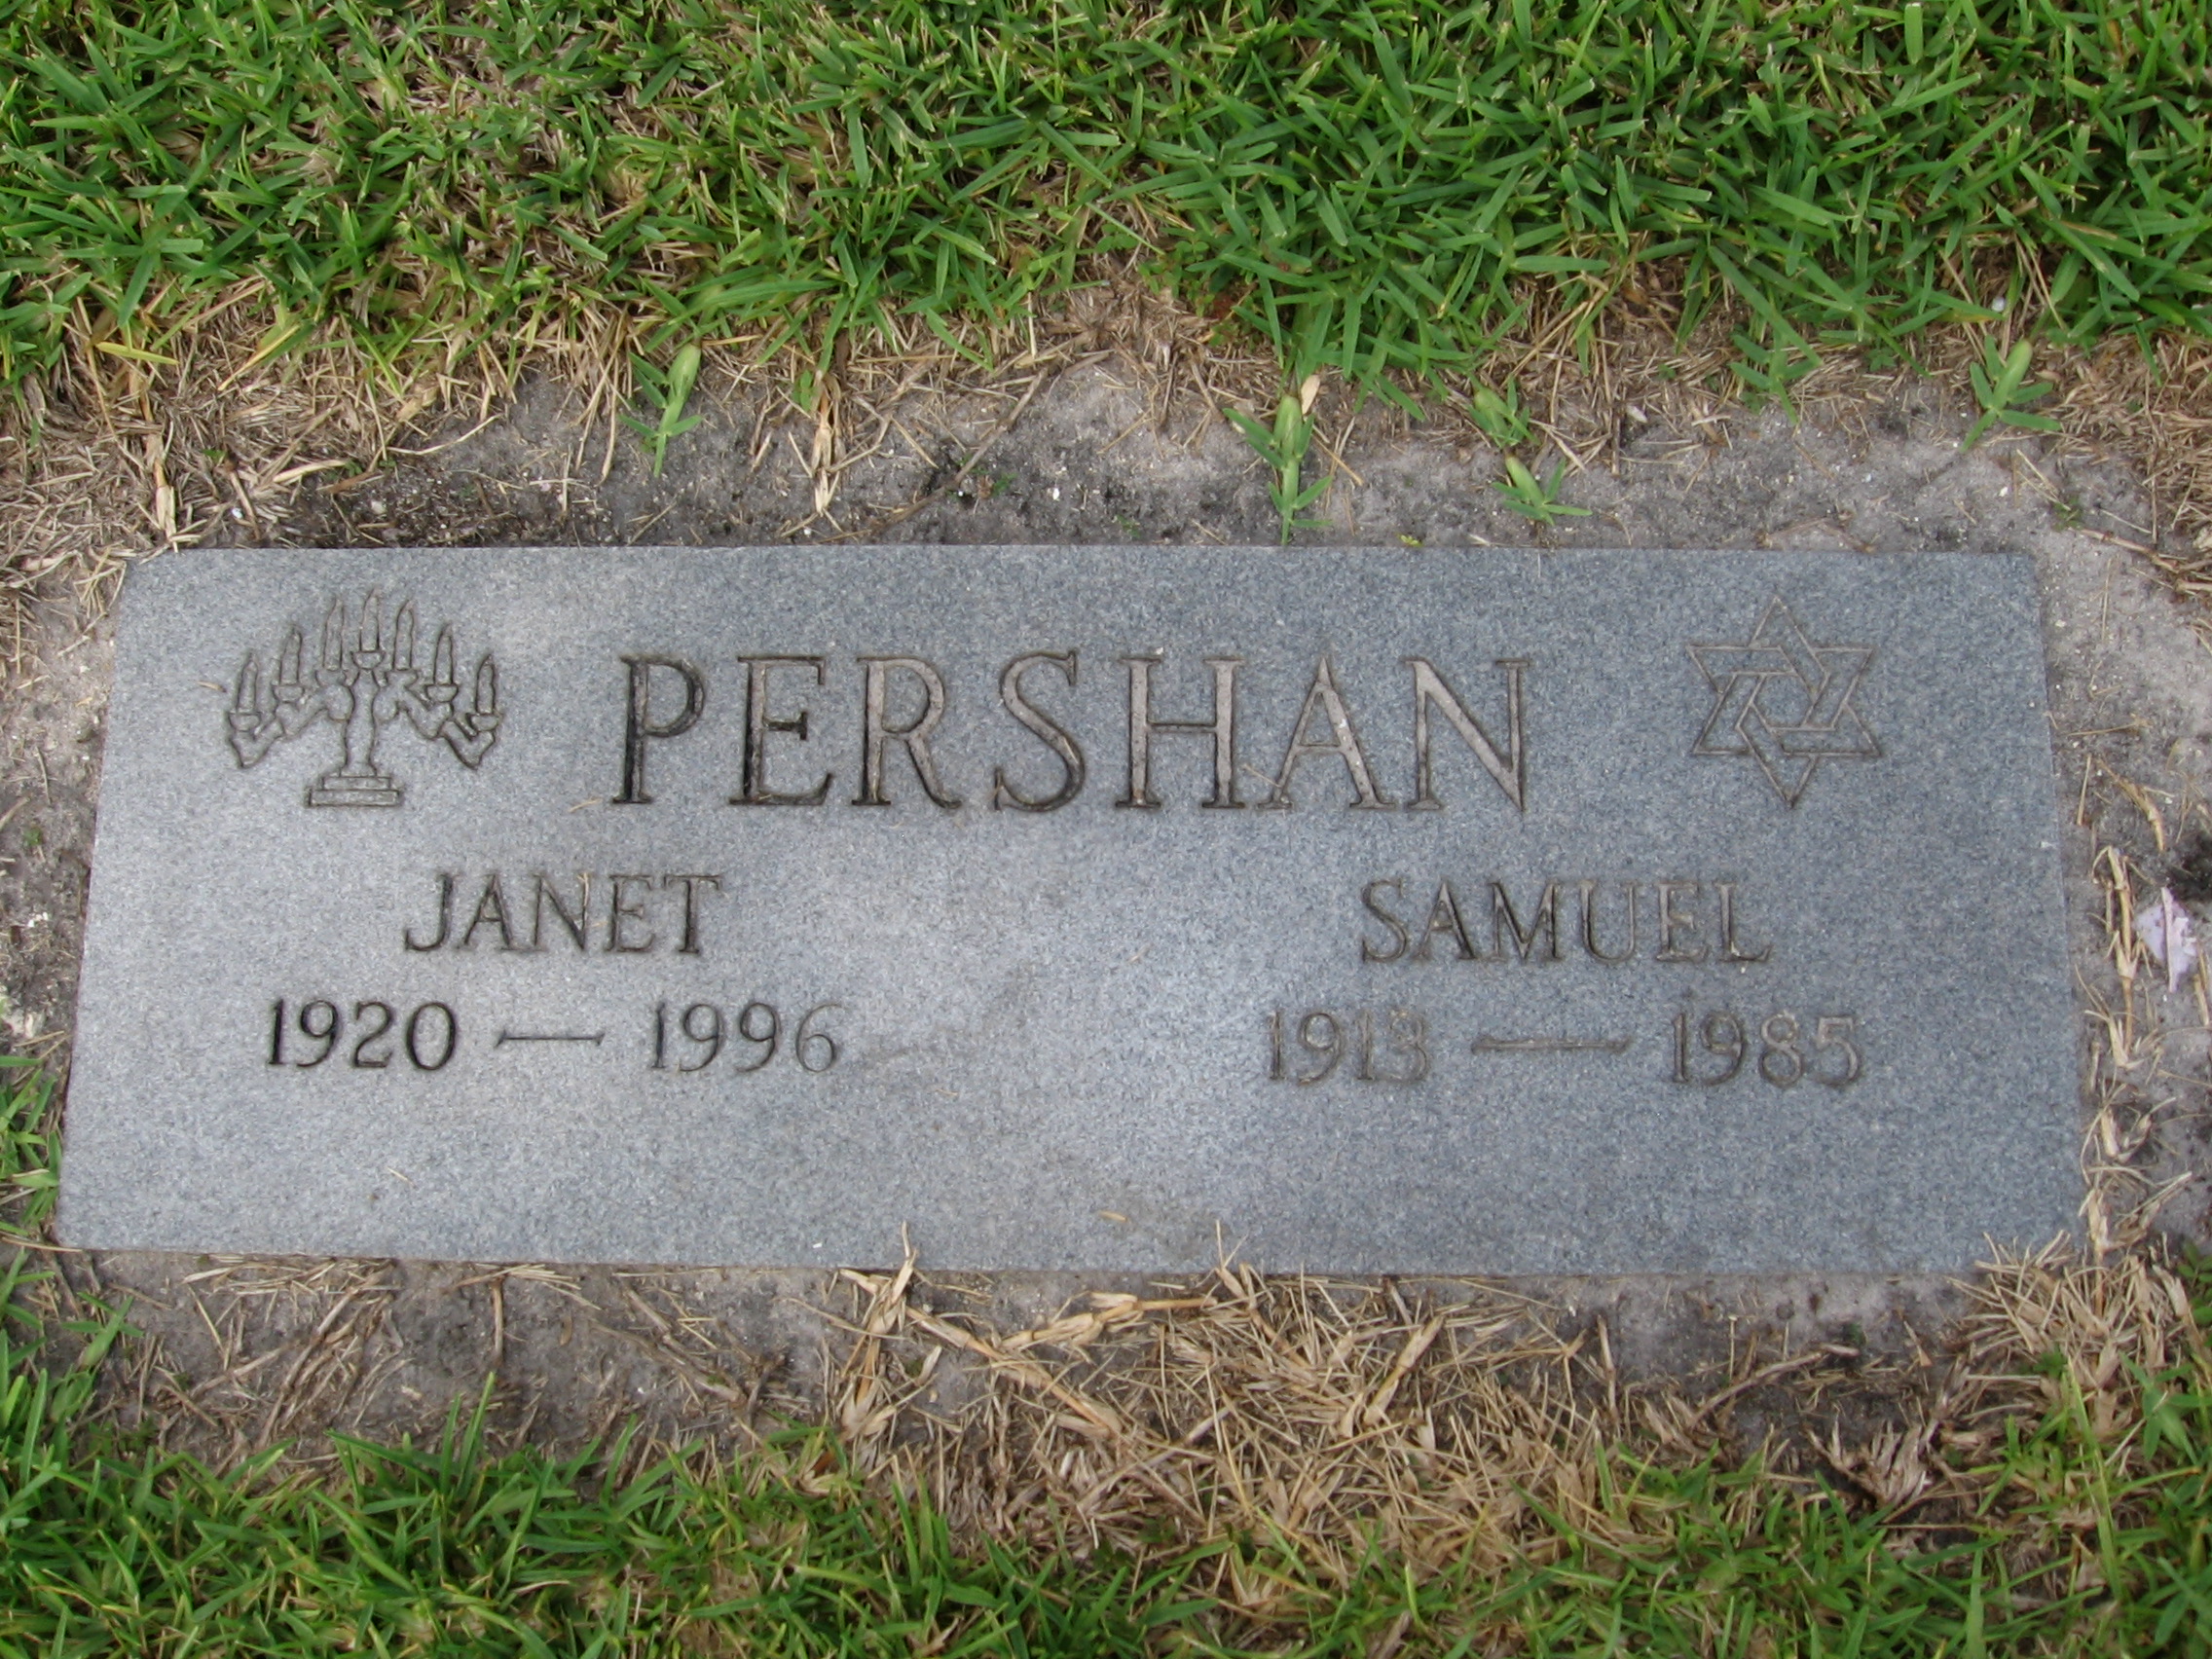 Janet Pershan